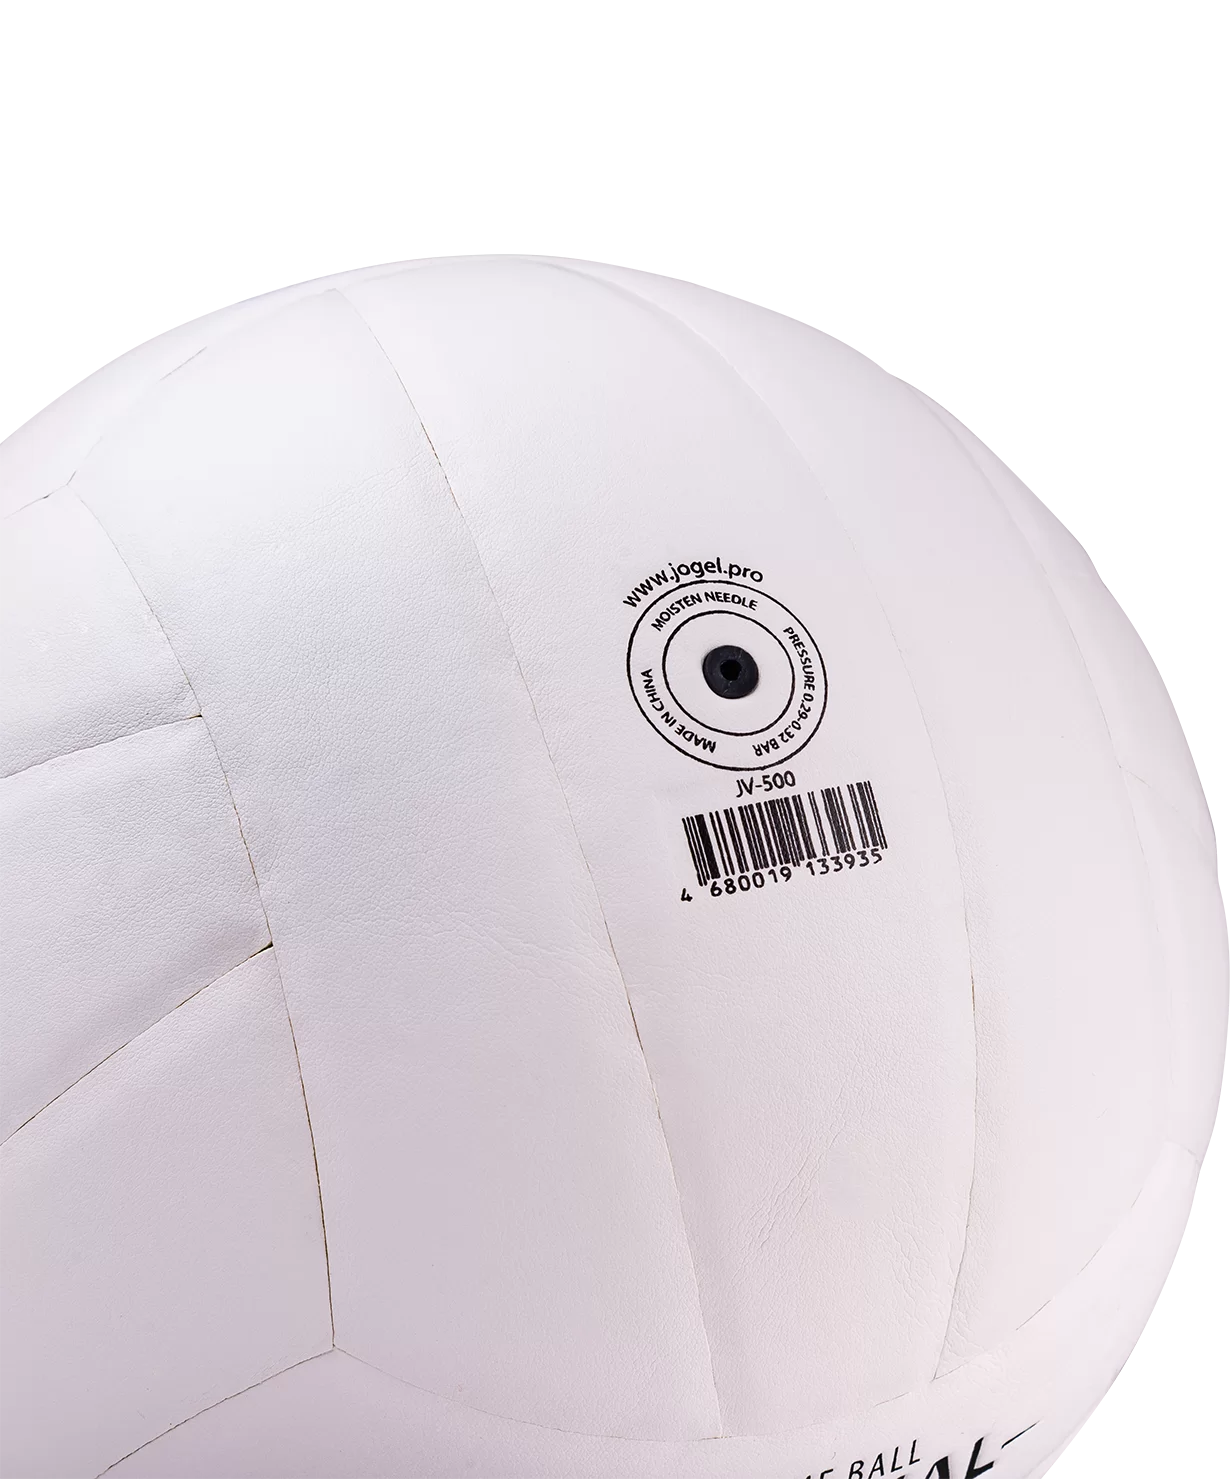 Фото Мяч волейбольный Jogel JV-500 9342 со склада магазина СпортЕВ